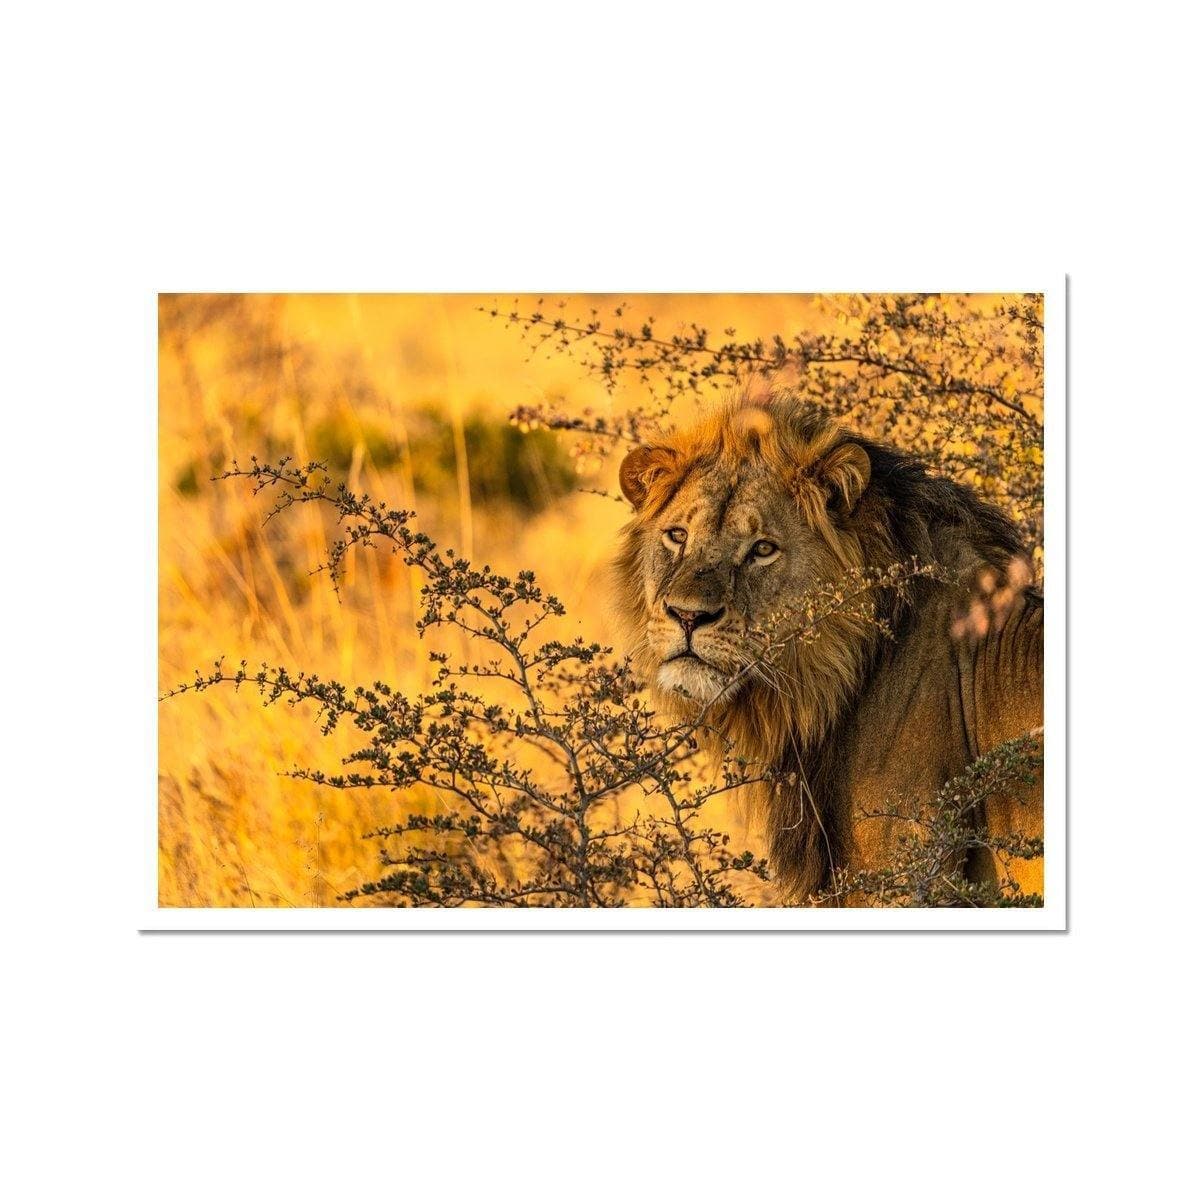 Kalahari Lion - Sean Lee-Davies Sean Lee Davies